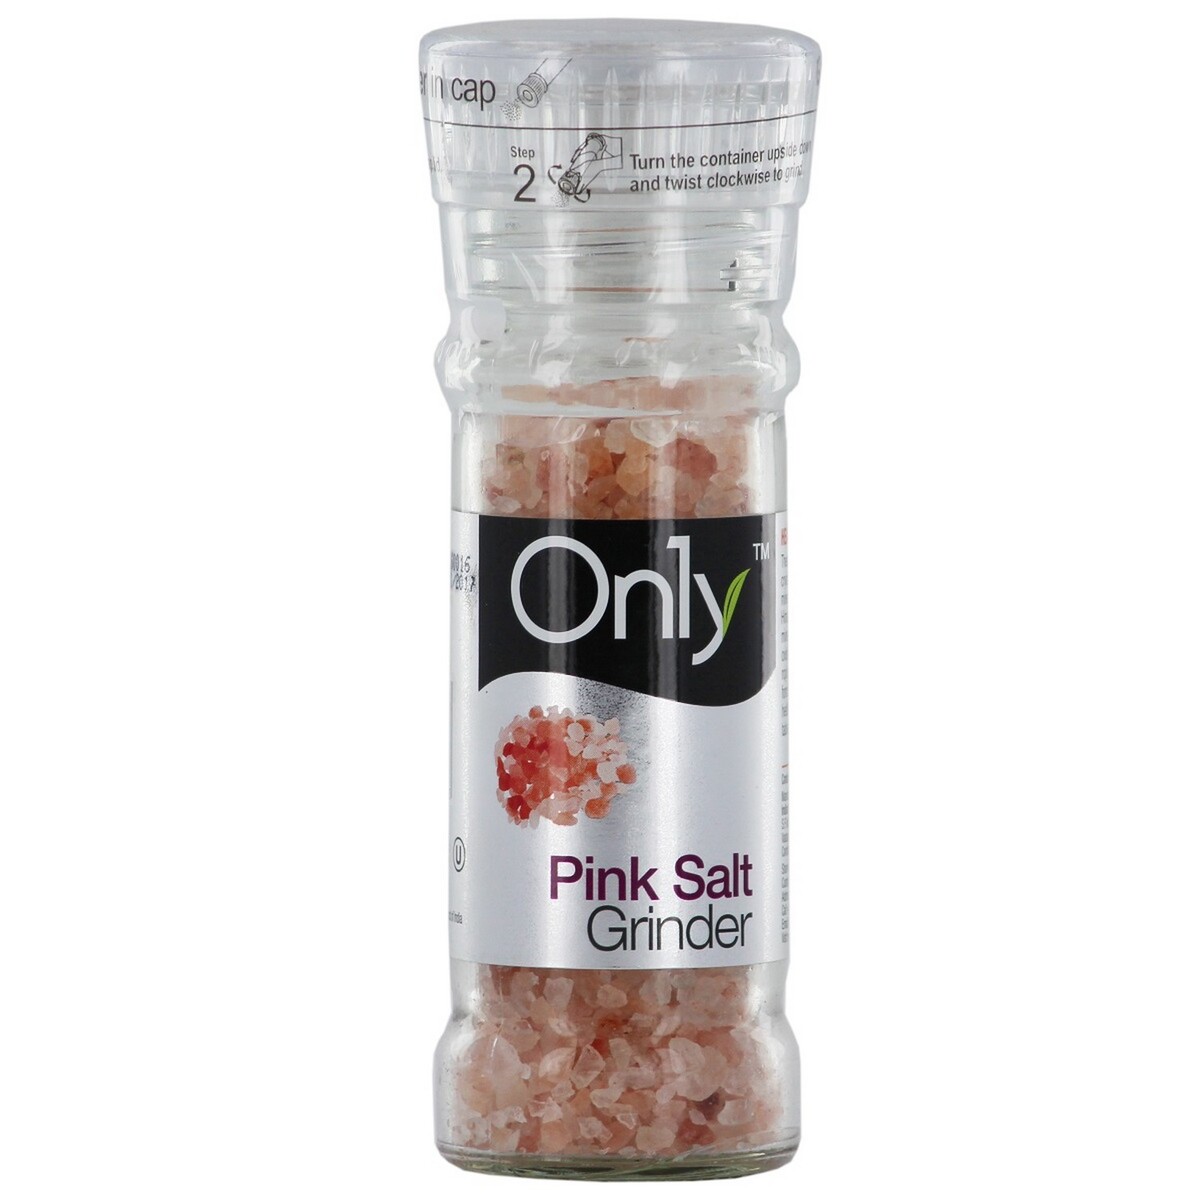 Only Pink Salt Grinder 100g